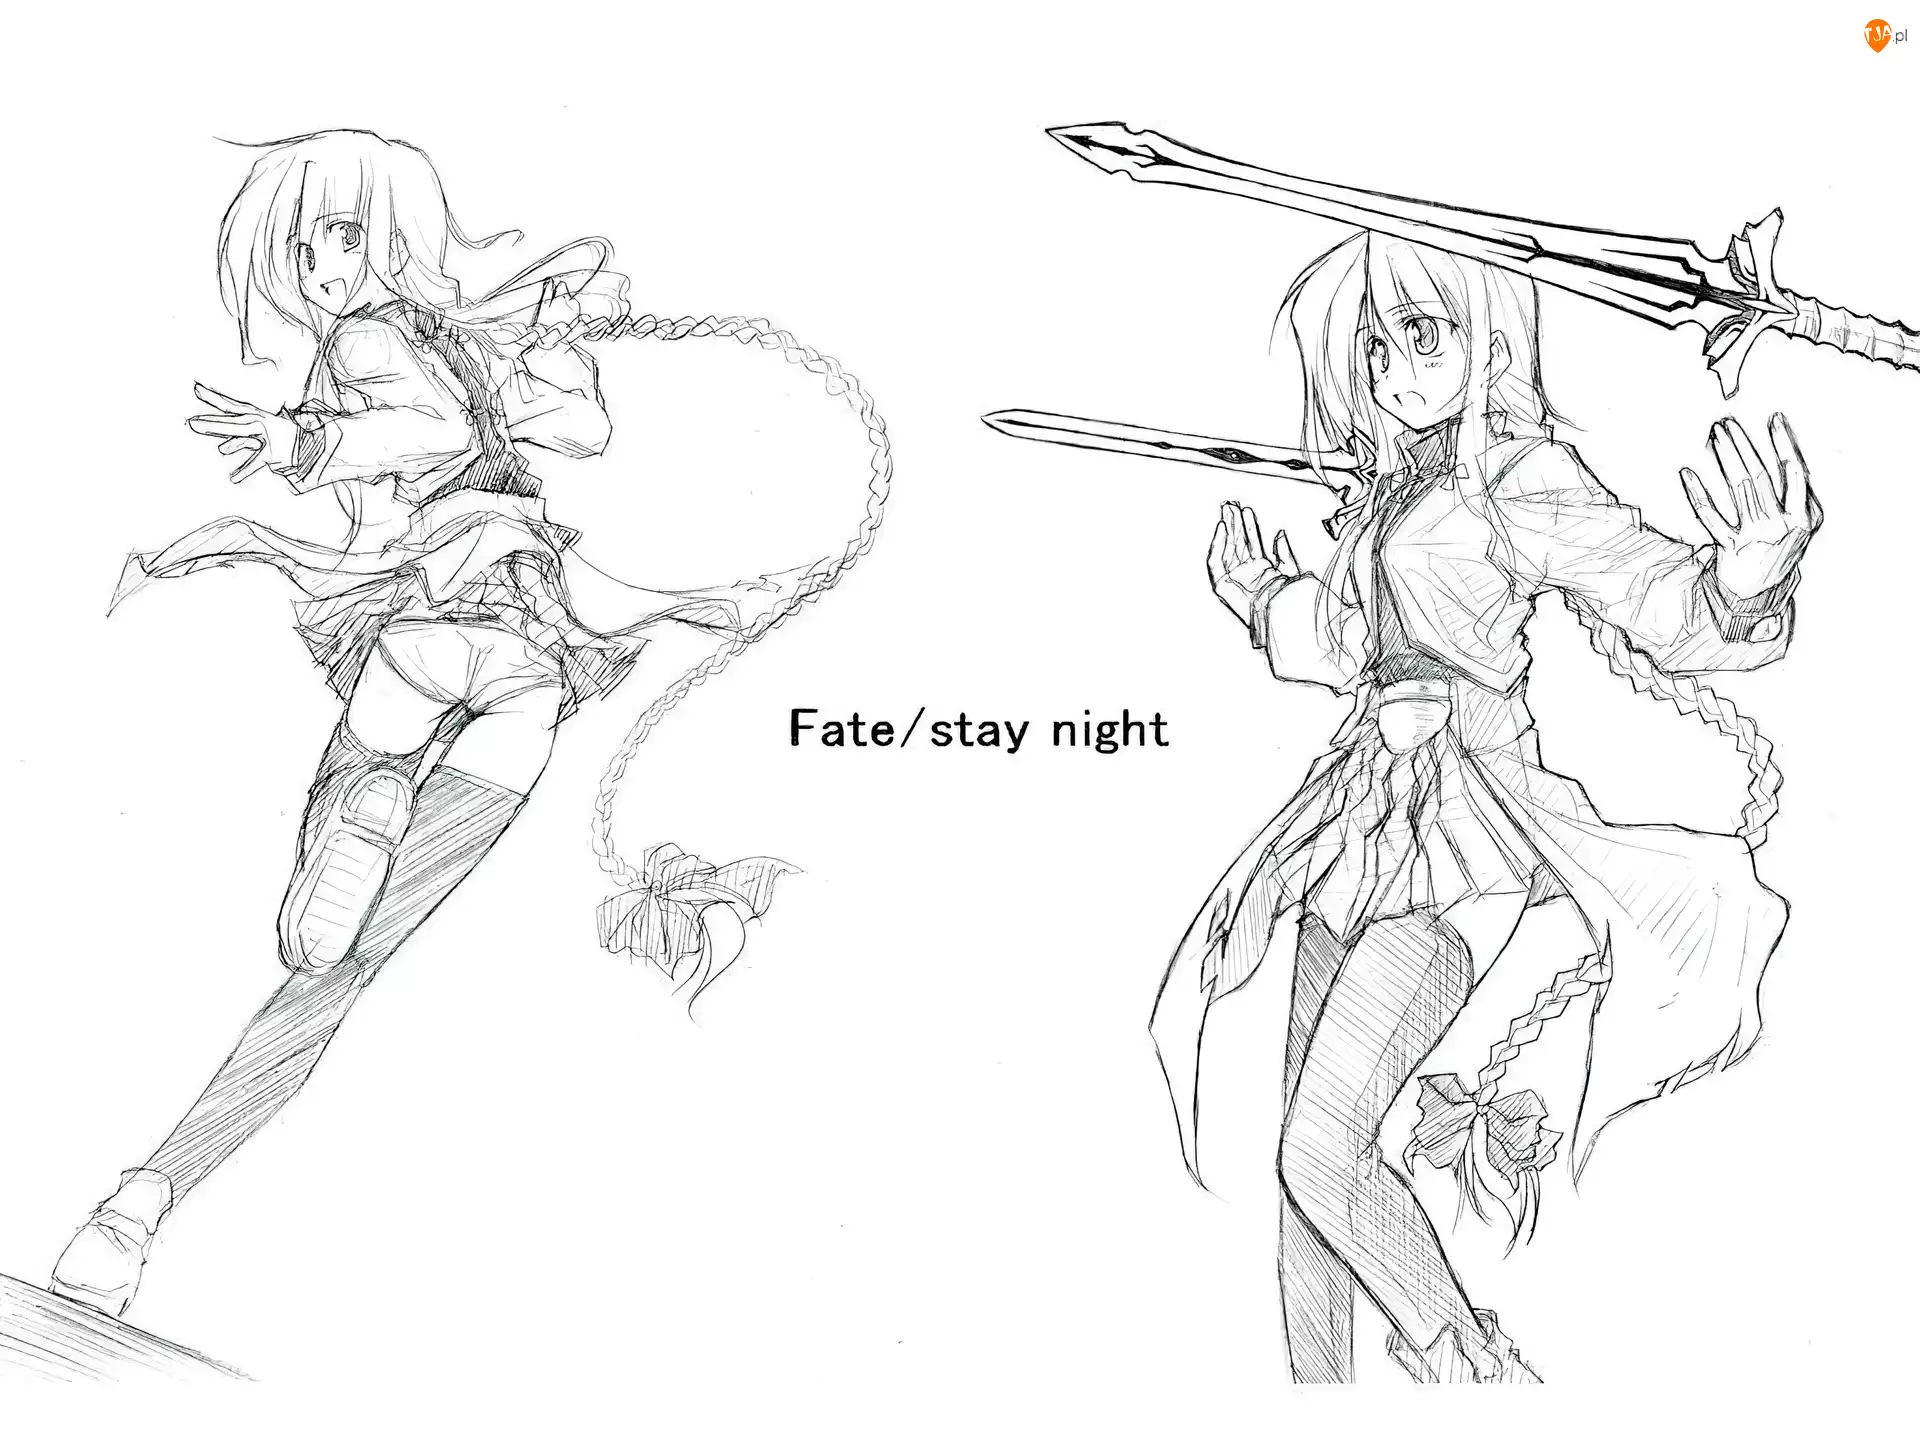 miecze, Fate Stay Night, ołówek, szkic, kobiety